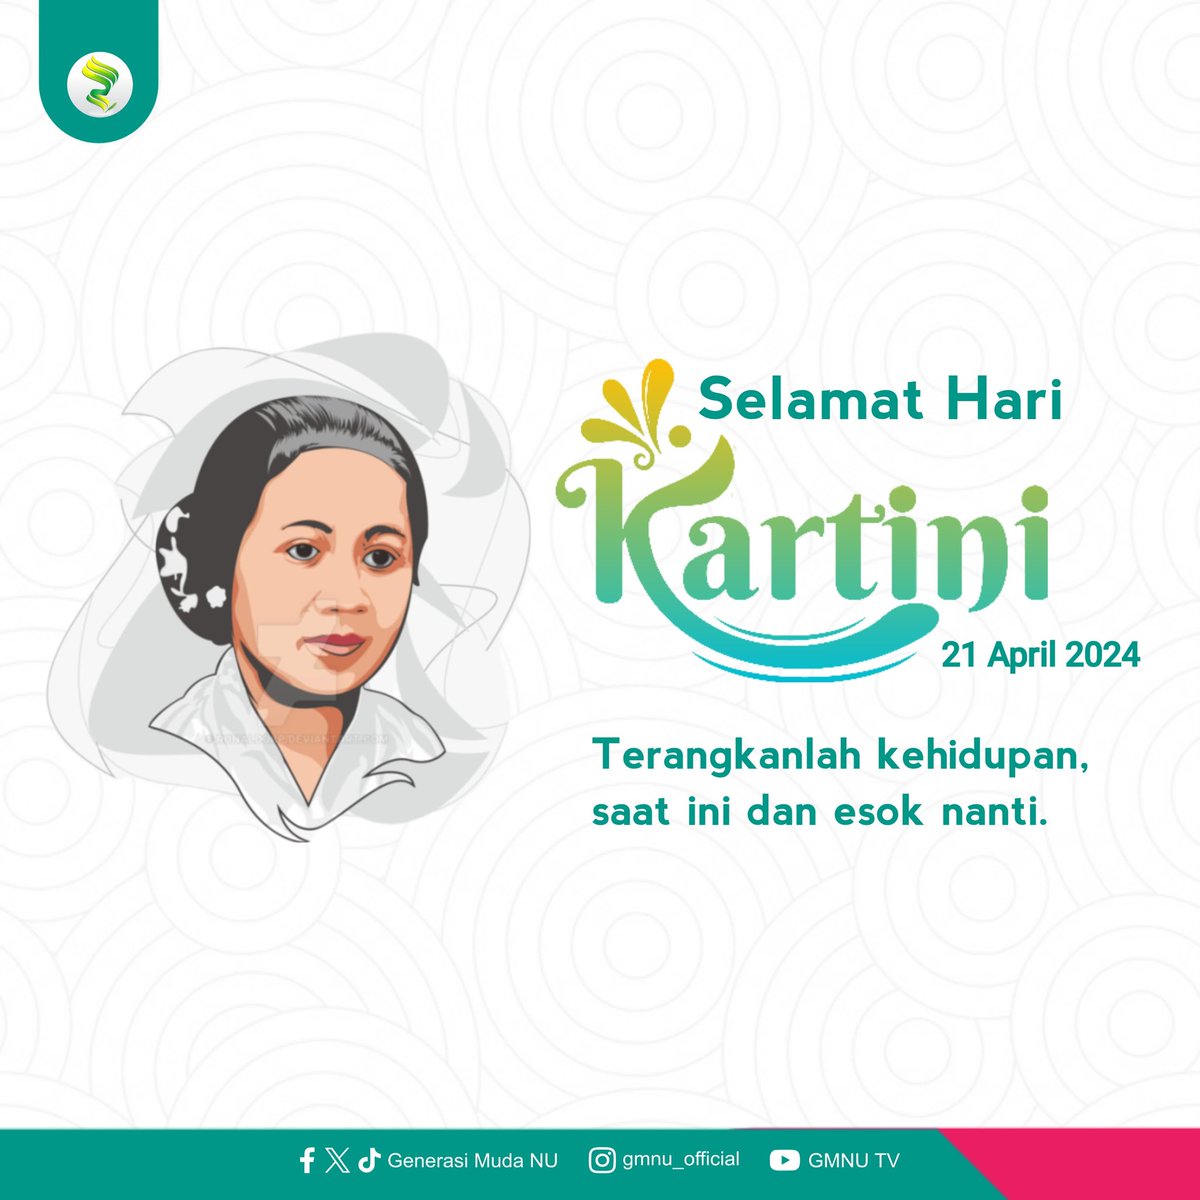 Teruntuk perempuan-perempuan hebat dan tangguh di seluruh Nusantara, kami Keluarga Besar Generasi Muda NU mengucapkan: Selamat Hari Kartini (21 April 2024) Terangkanlah kehidupan, saat ini dan esok nanti. #GenerasiMudaNU